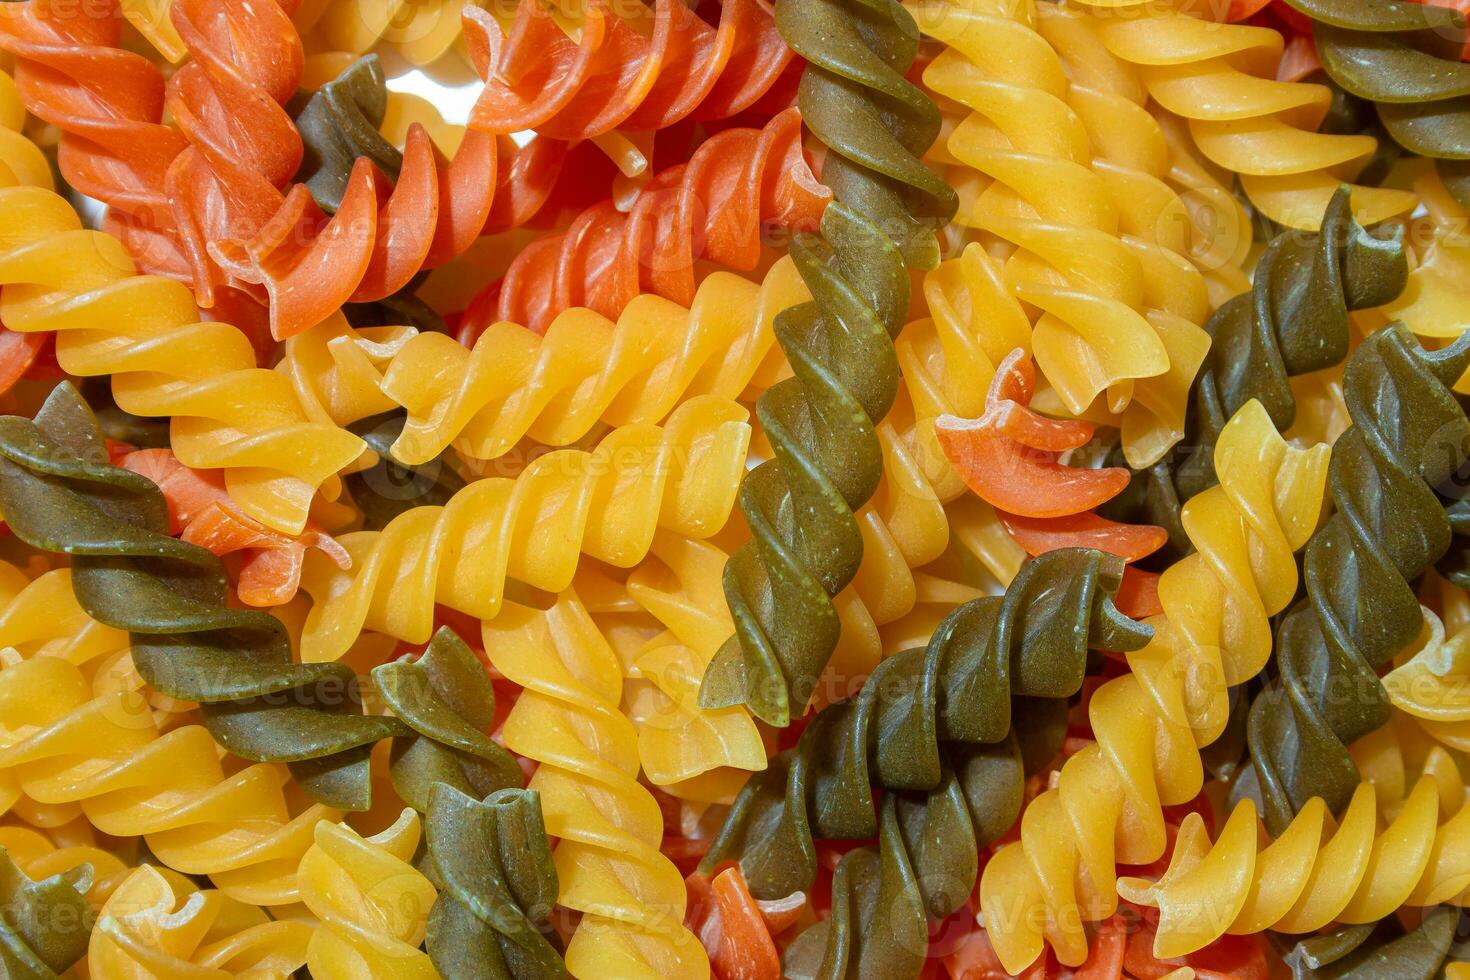 ungekocht beschwingt farbig Fusilli Pasta. ein faszinierend kulinarisch Segeltuch von mehrfarbig Spiralen, Erstellen ein lebhaft und texturiert Hintergrund zum Gourmet Kochen. farbig trocken Pasta. roh Makkaroni foto